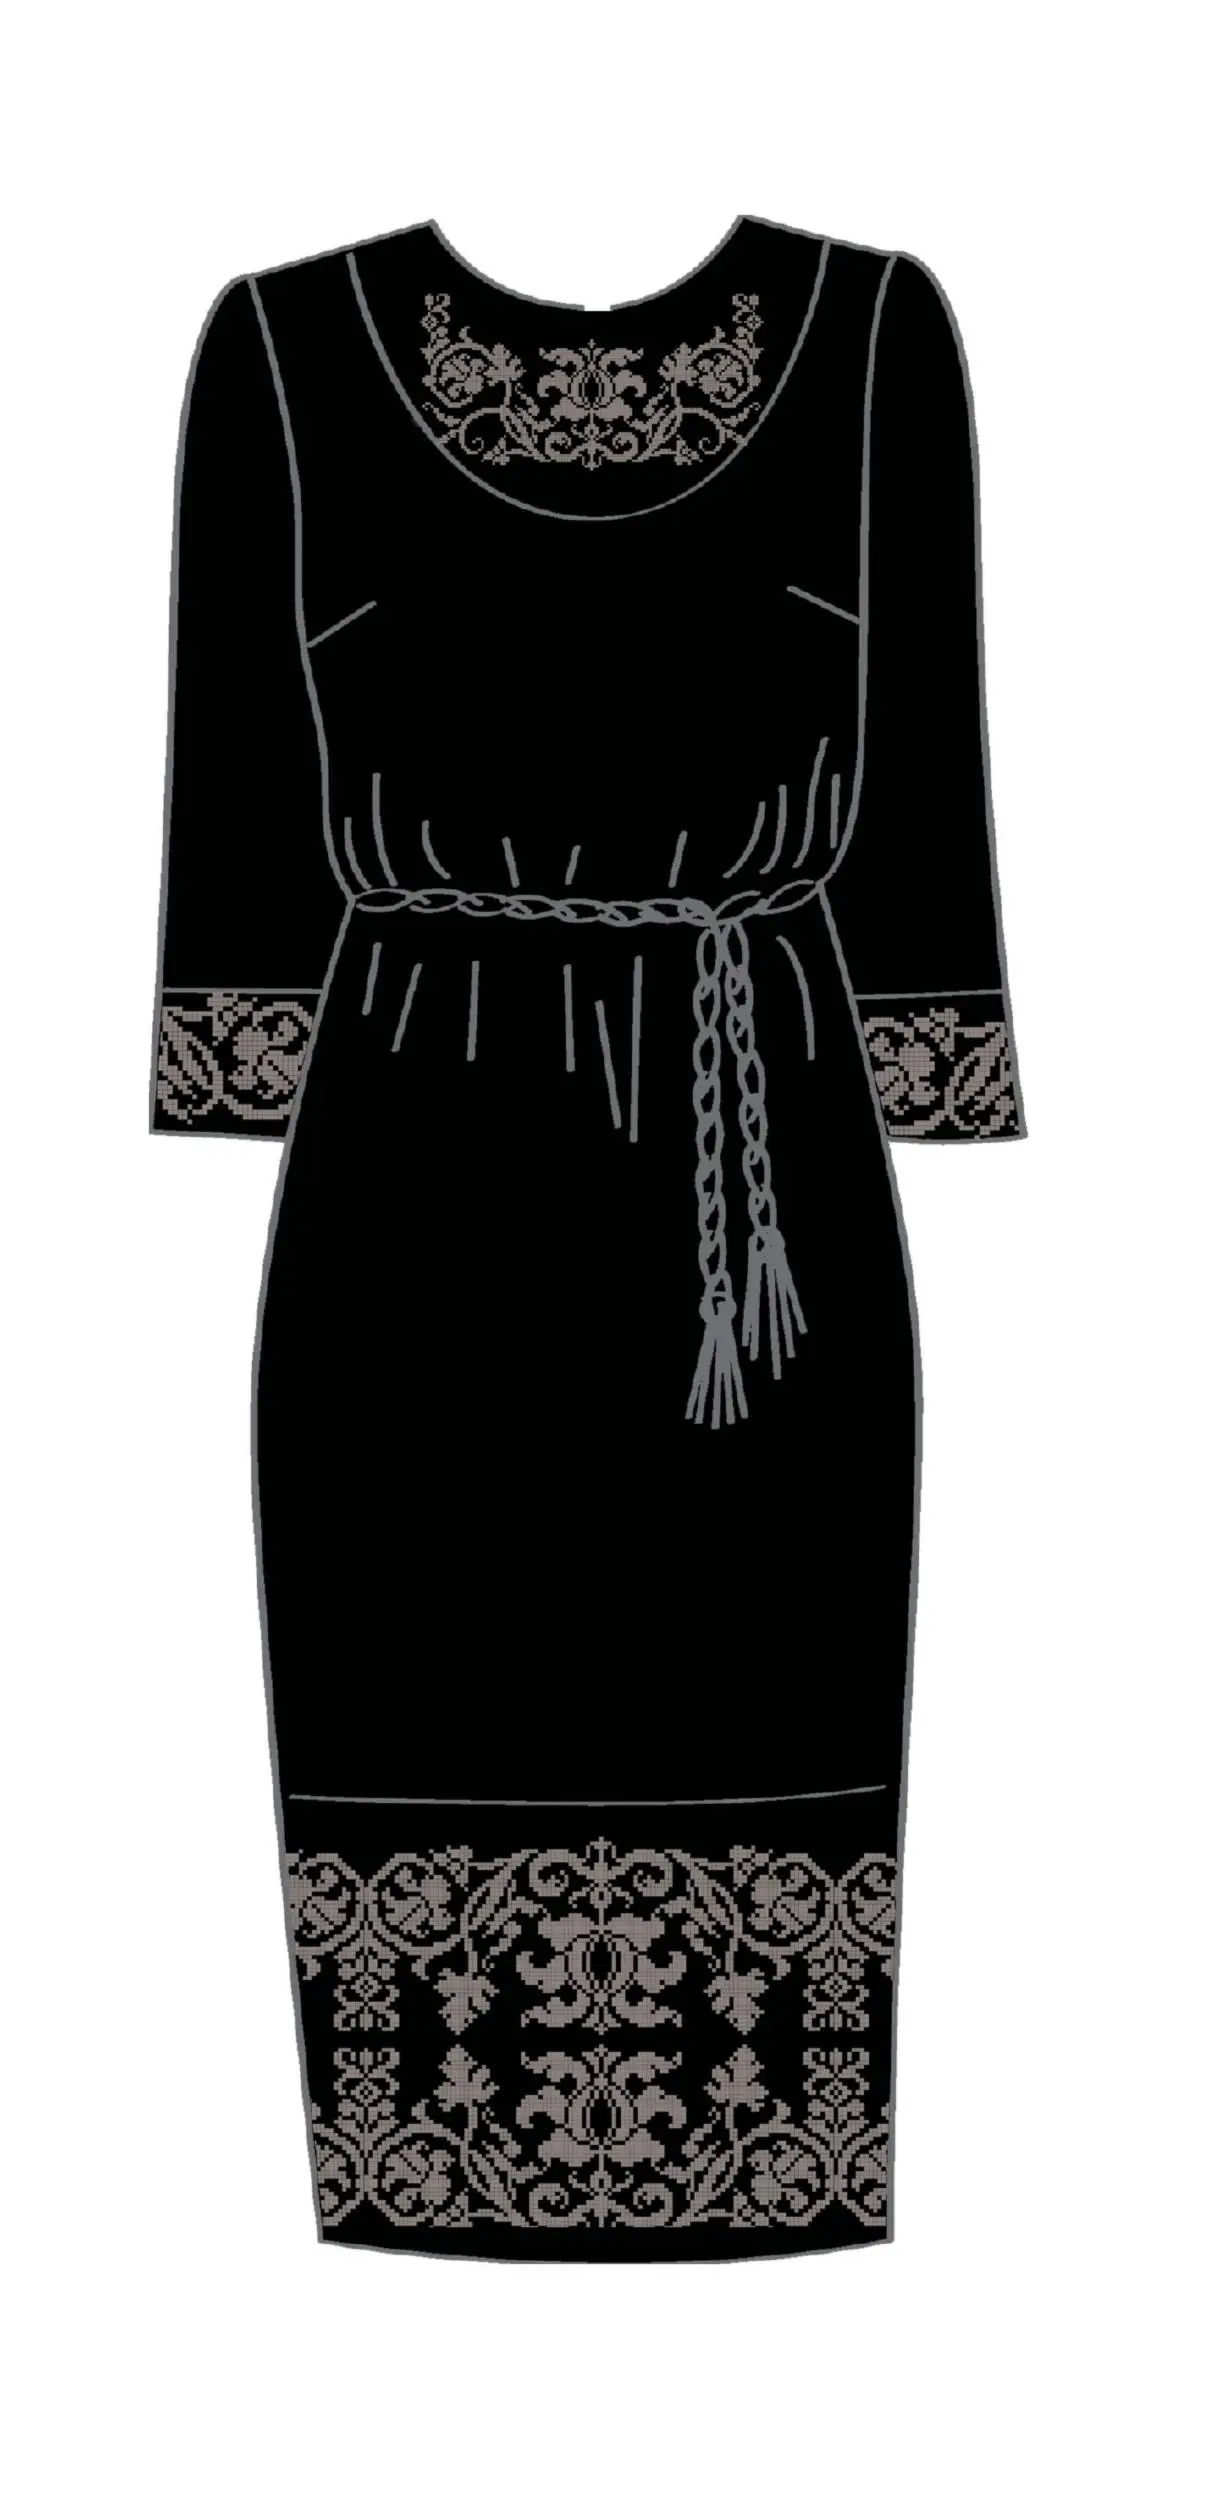 820-14/10 Плаття жіноче з поясом, чорне, розмір 44